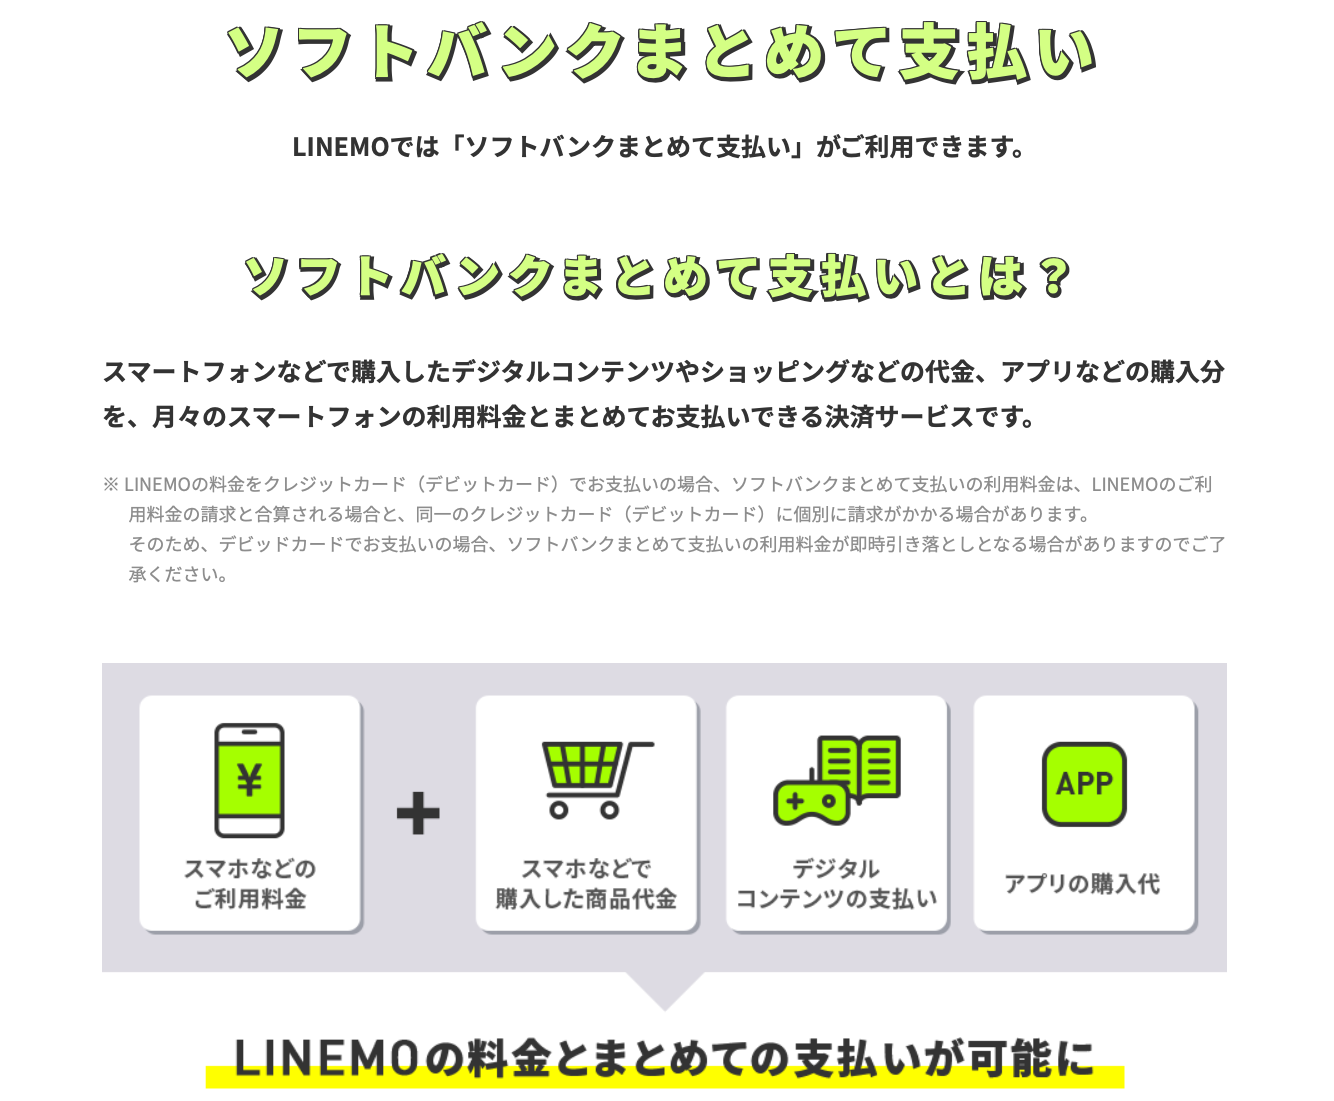 【必見】LINEMOはネットフリックスが見れてキャリア決済も対応 LINEMO-ソフトバンクまとめて支払い